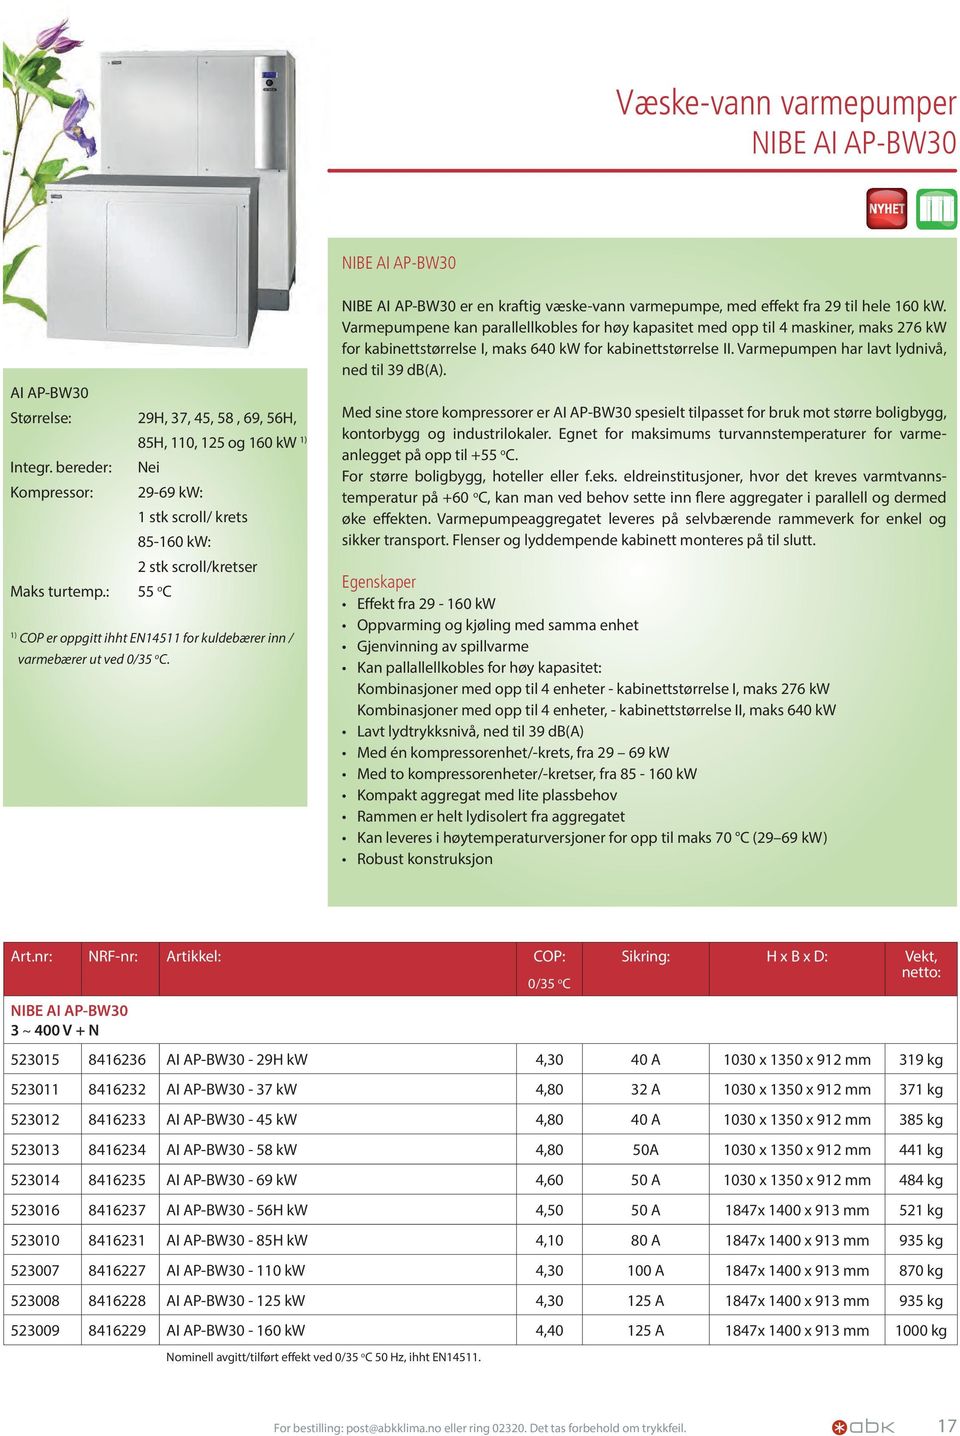 NIBE AI AP-BW30 er en kraftig væske-vann varmepumpe, med effekt fra 29 til hele 160 kw.